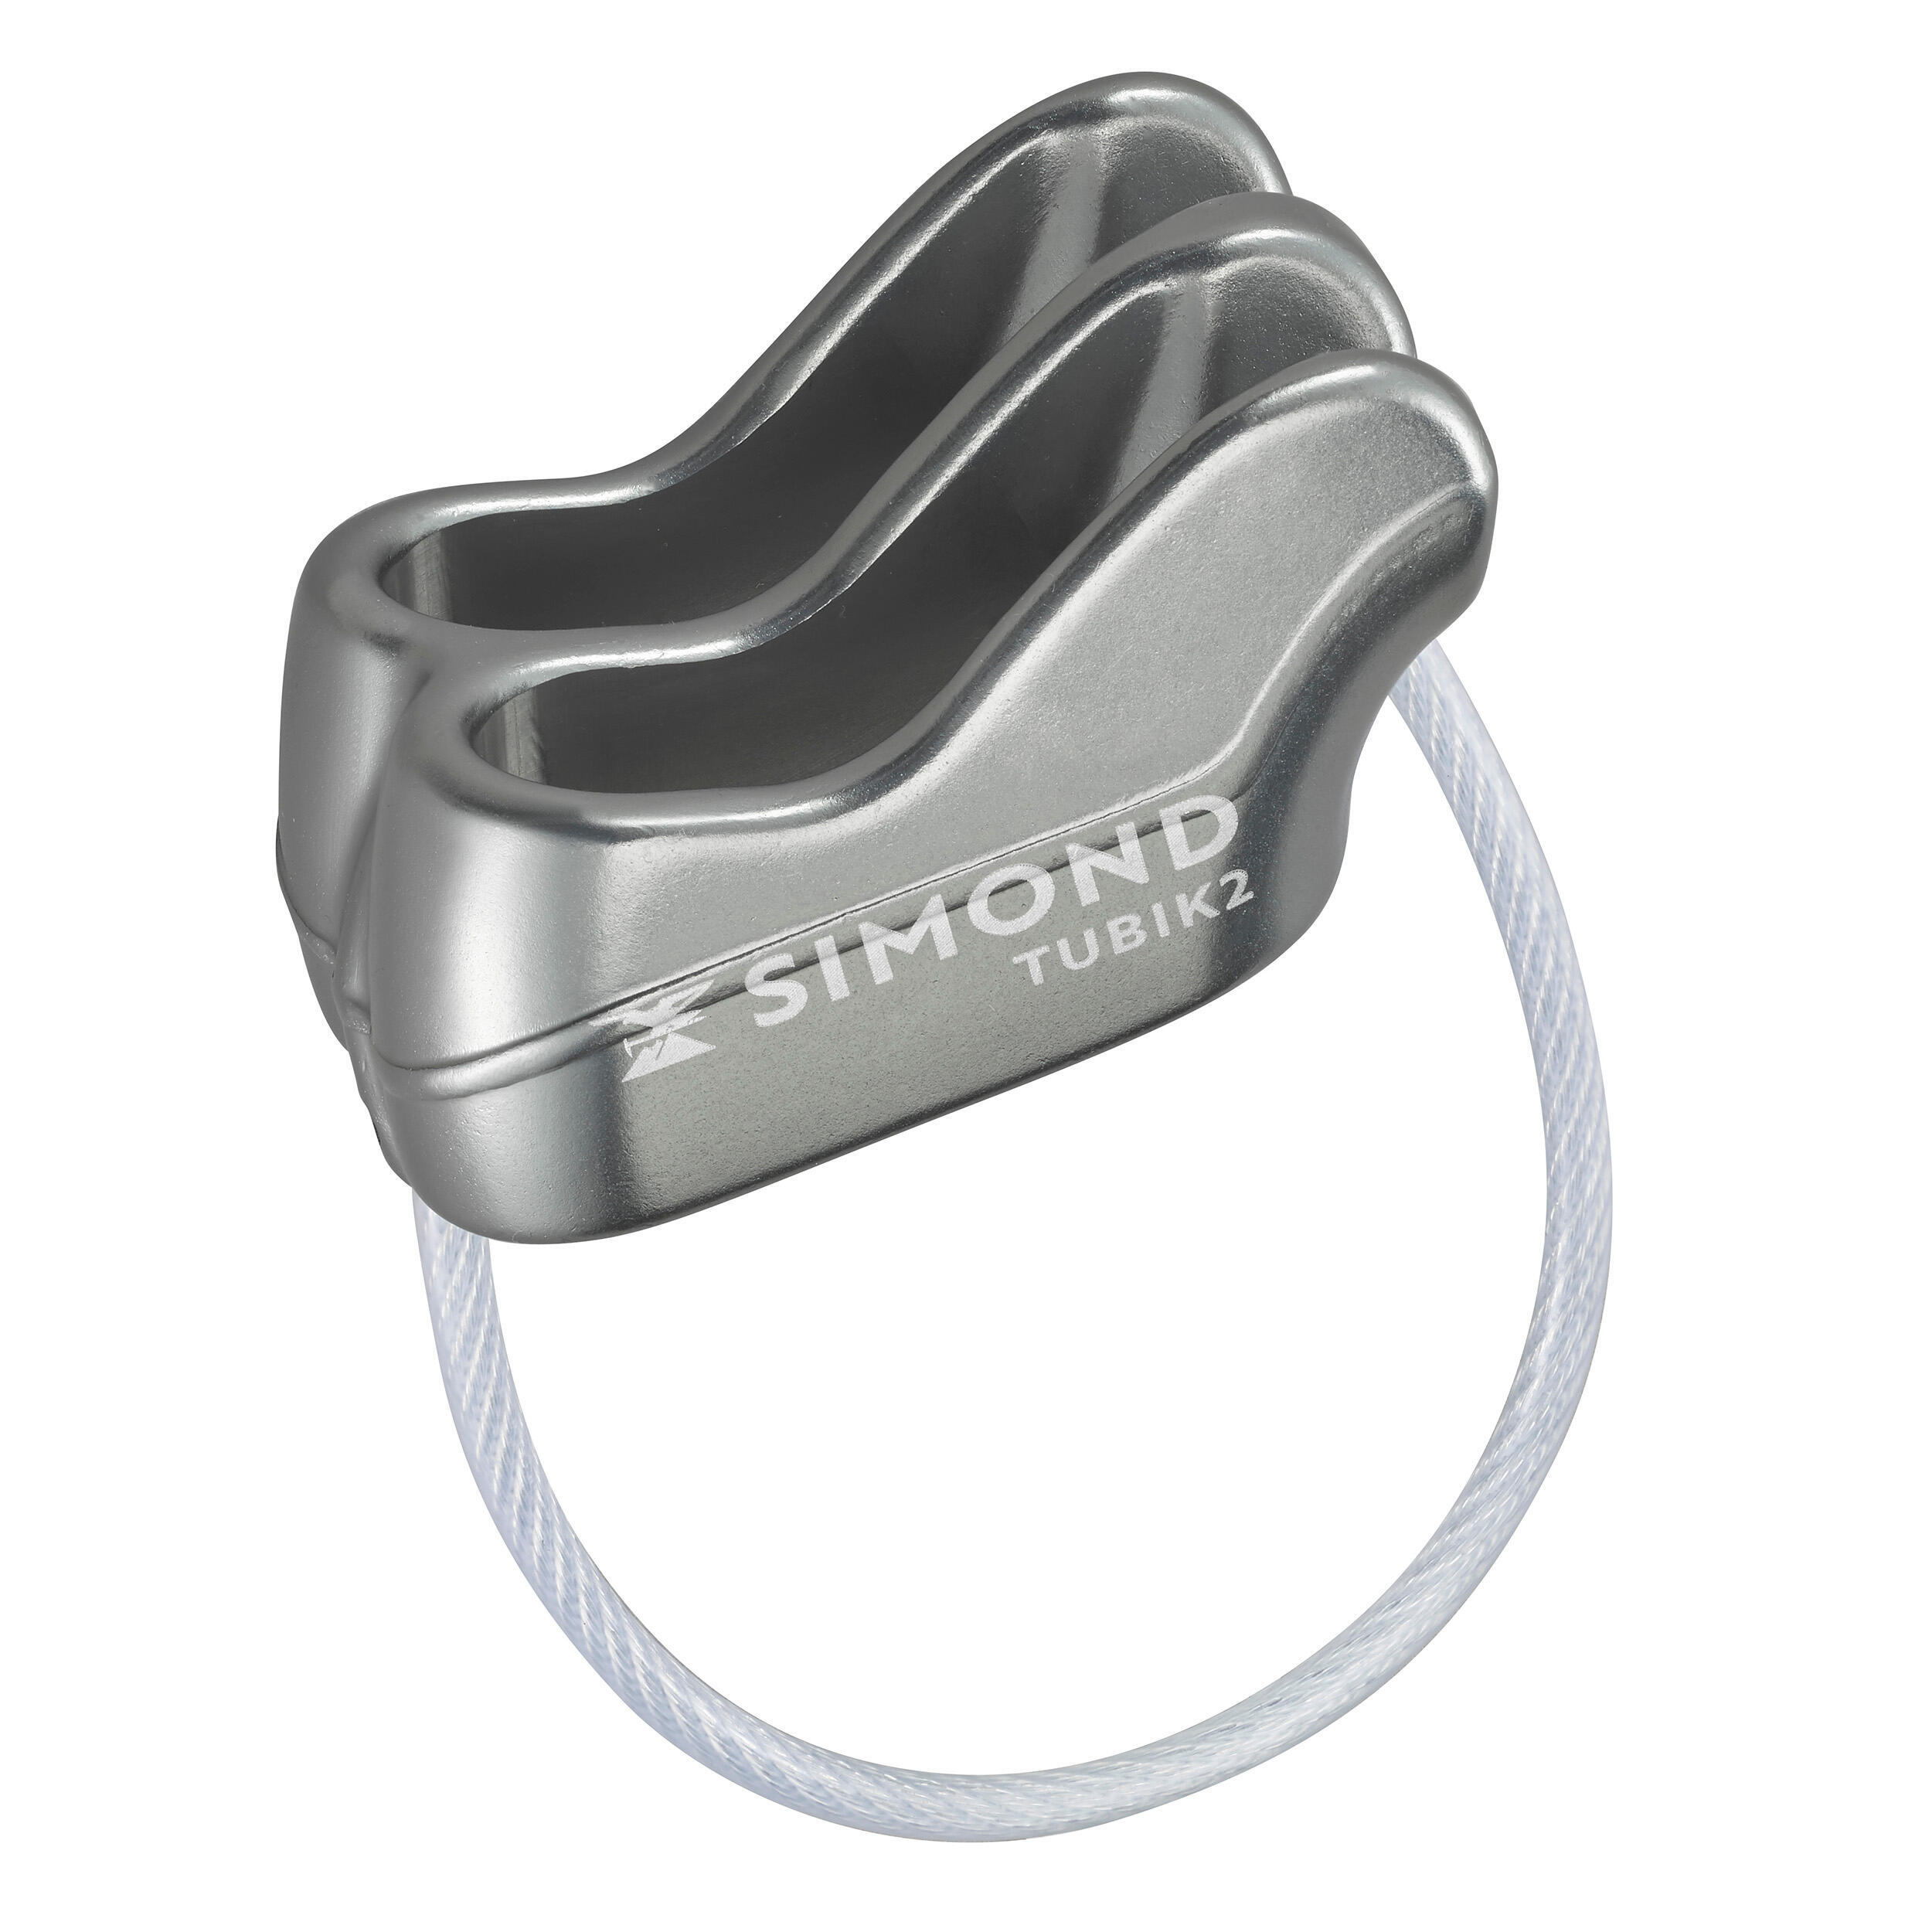 Страховочно-спусковое устройство Simond 2, серый страховочно спусковое устройство для альпинизма simond tubik compact x decathlon